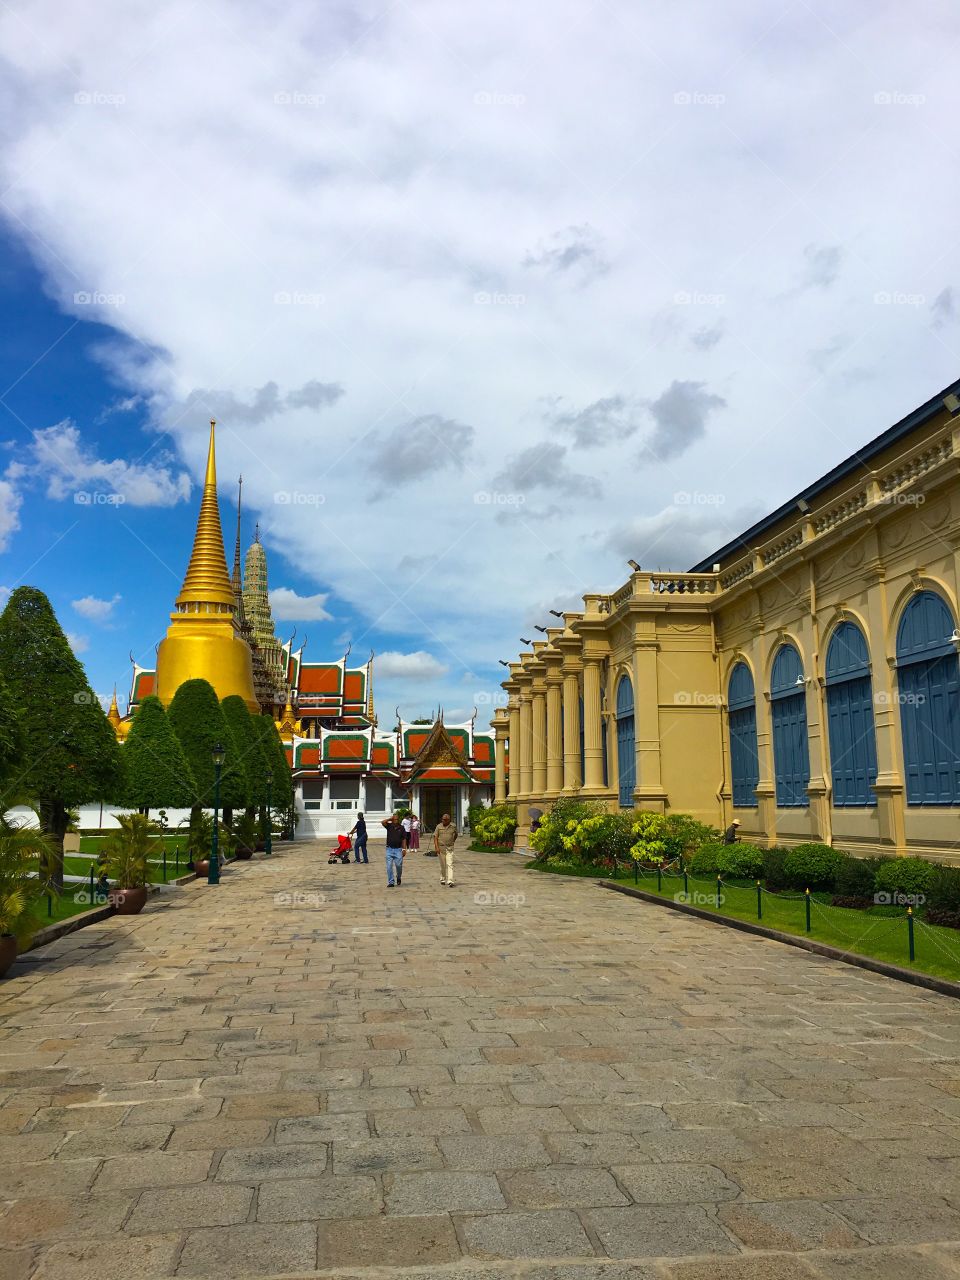 Grand Palace / Bangkok Thailand 1